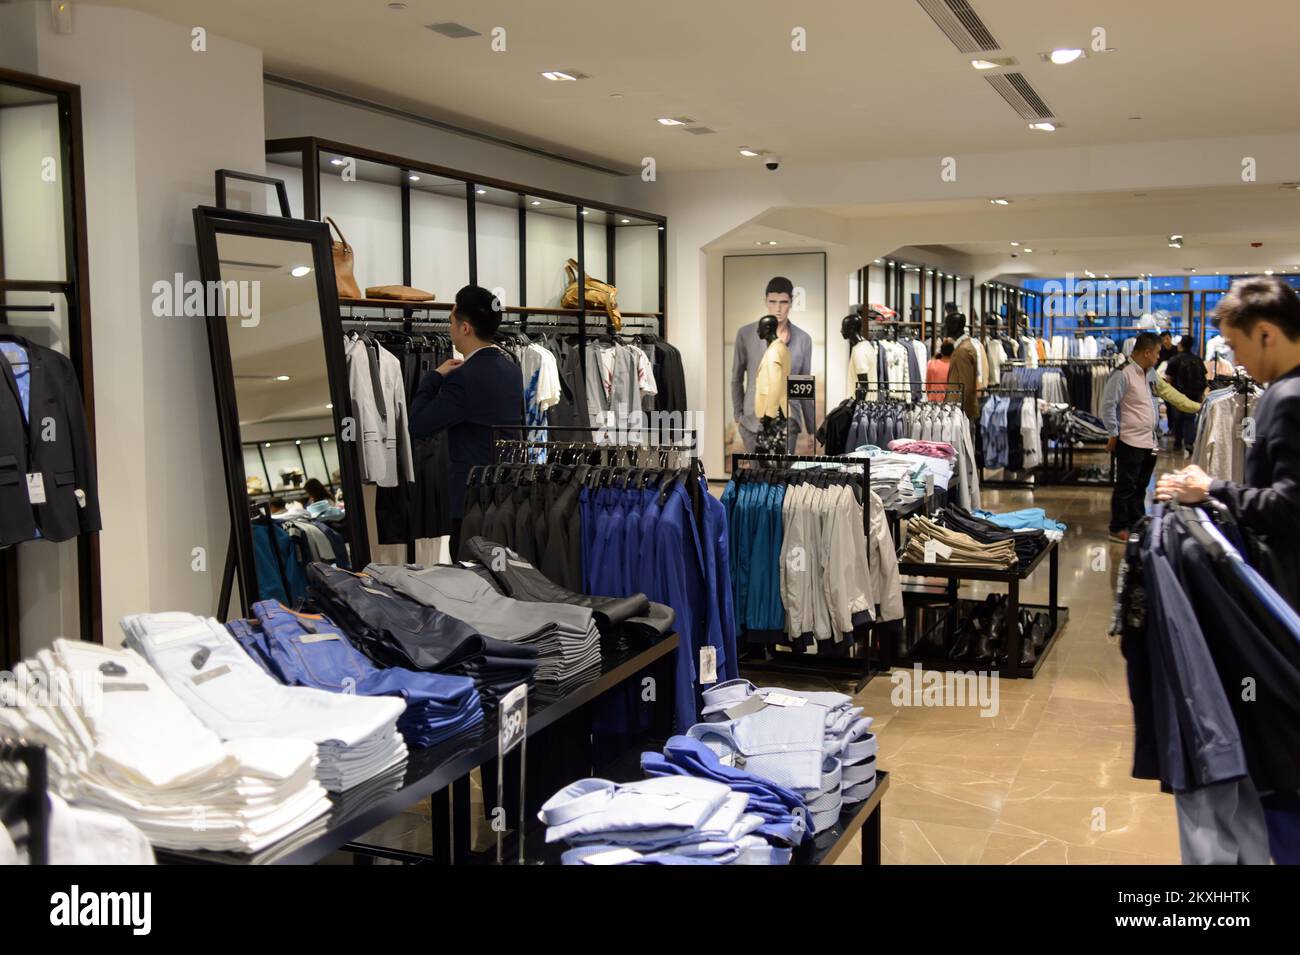 HONG KONG - MAY 05, 2015: Zara store interior. Zara is a Spanish ...